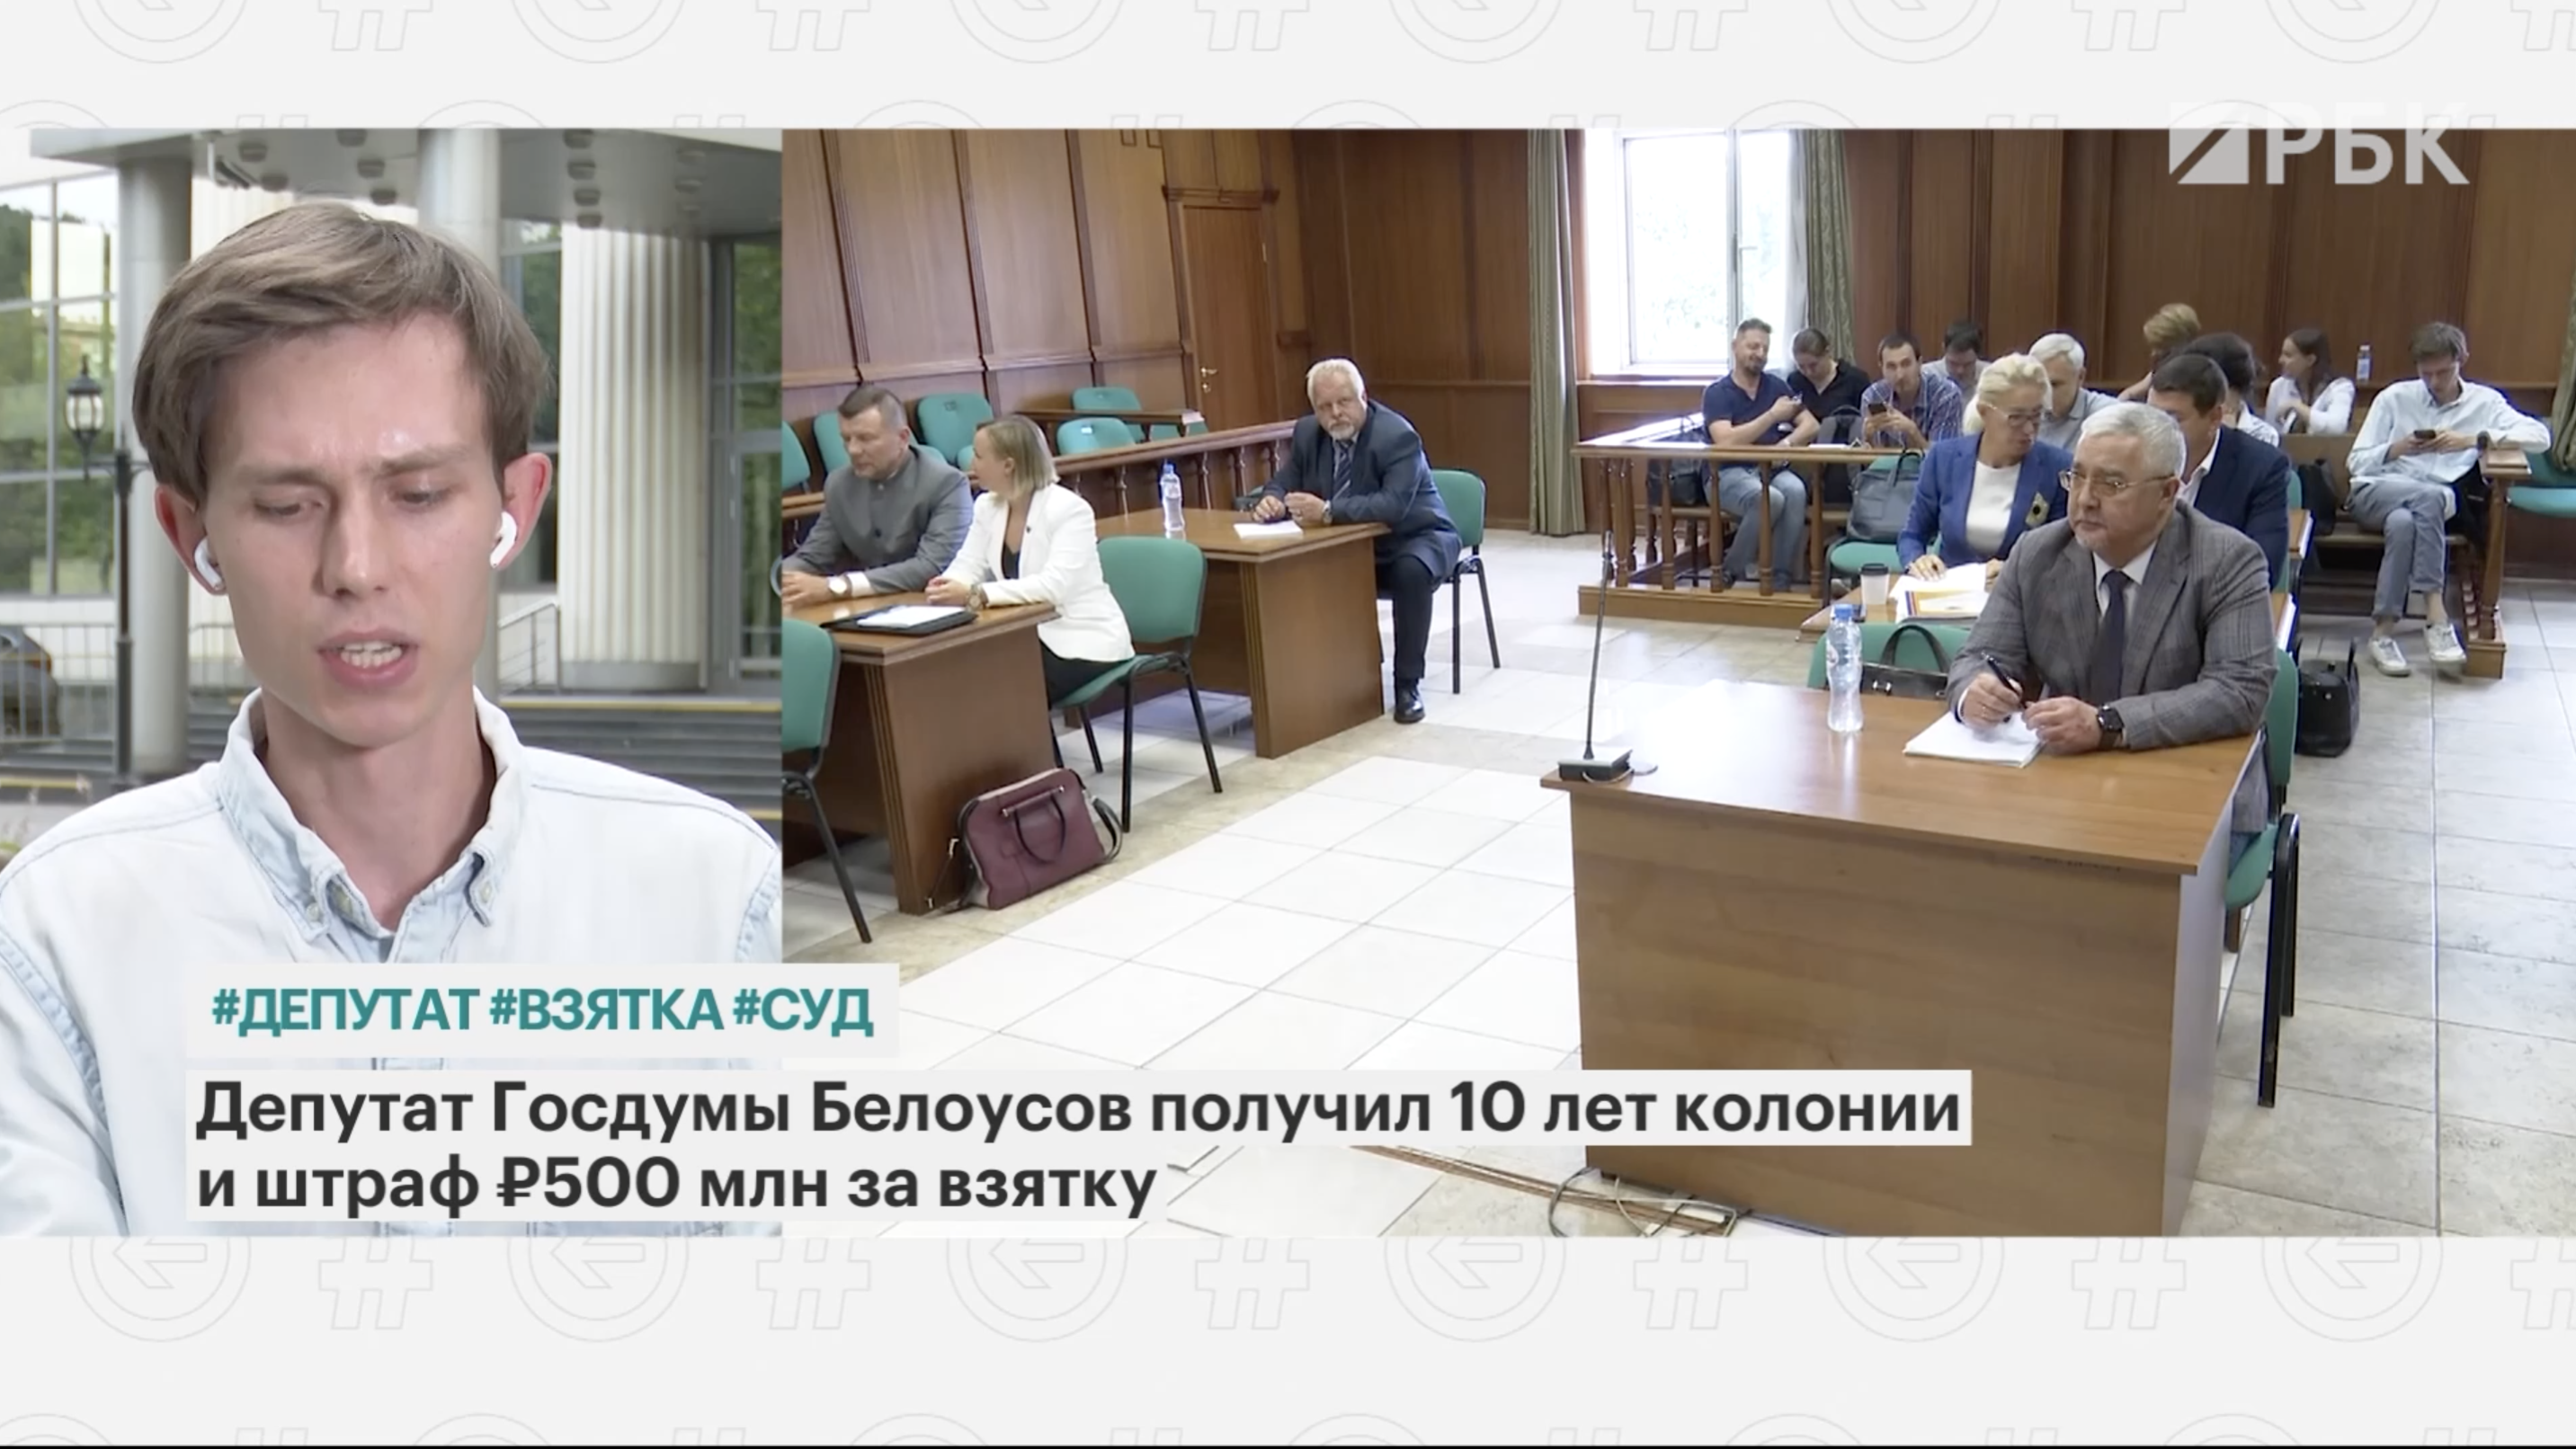 Депутата Белоусова приговорили к 10 годам лишения свободы, а он не пришел